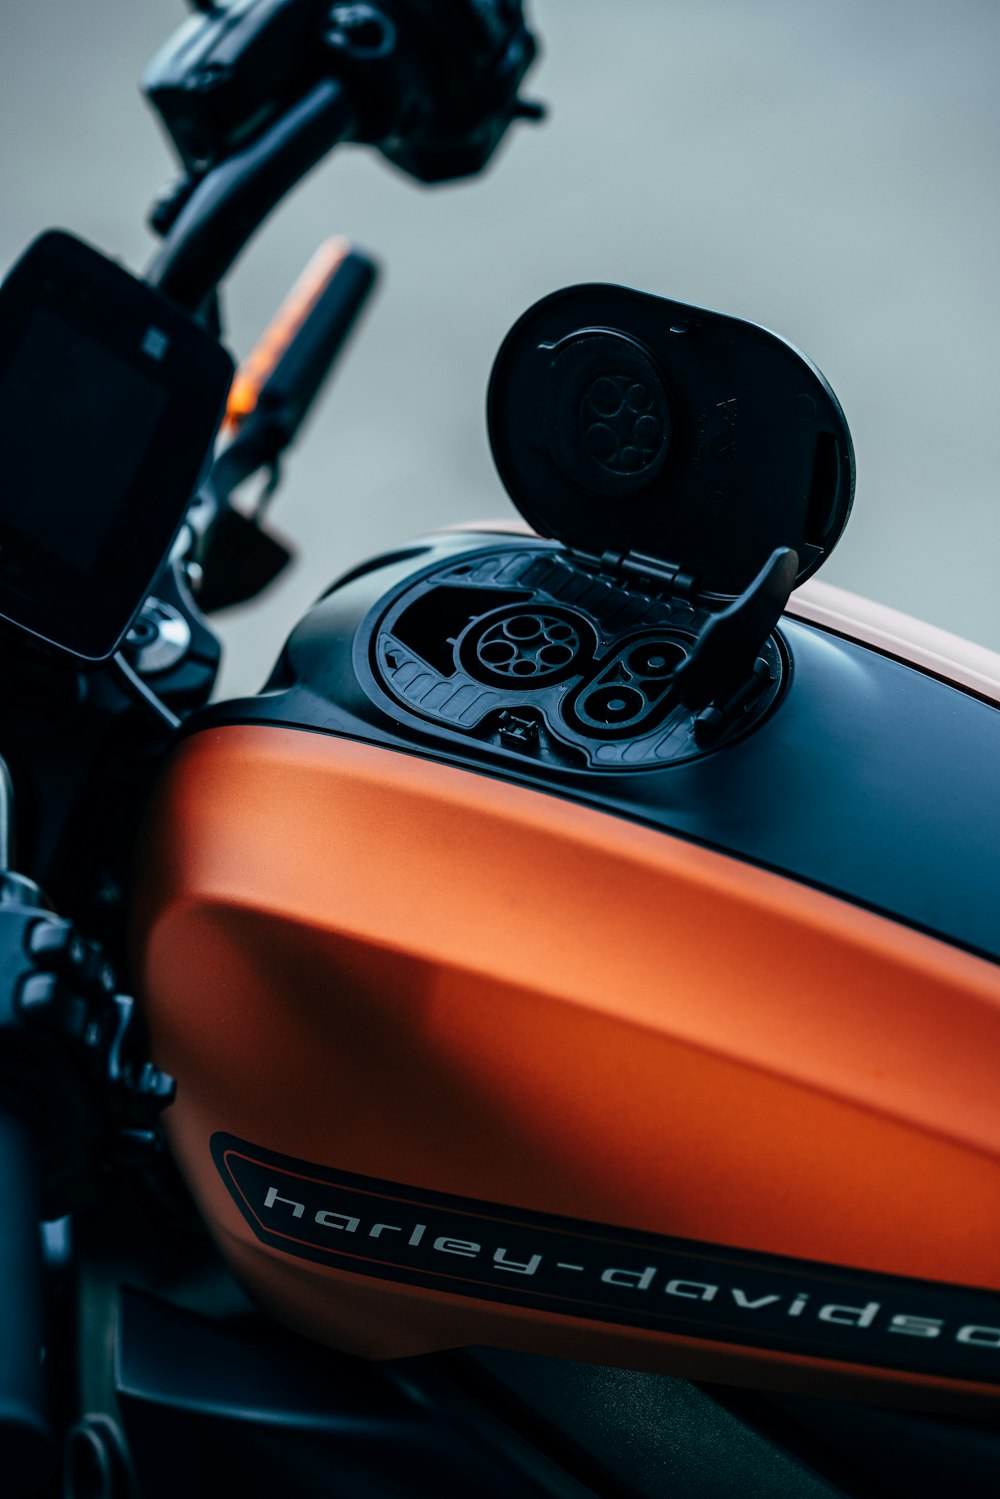 Motocicletta Harley-Davidson arancione e nera